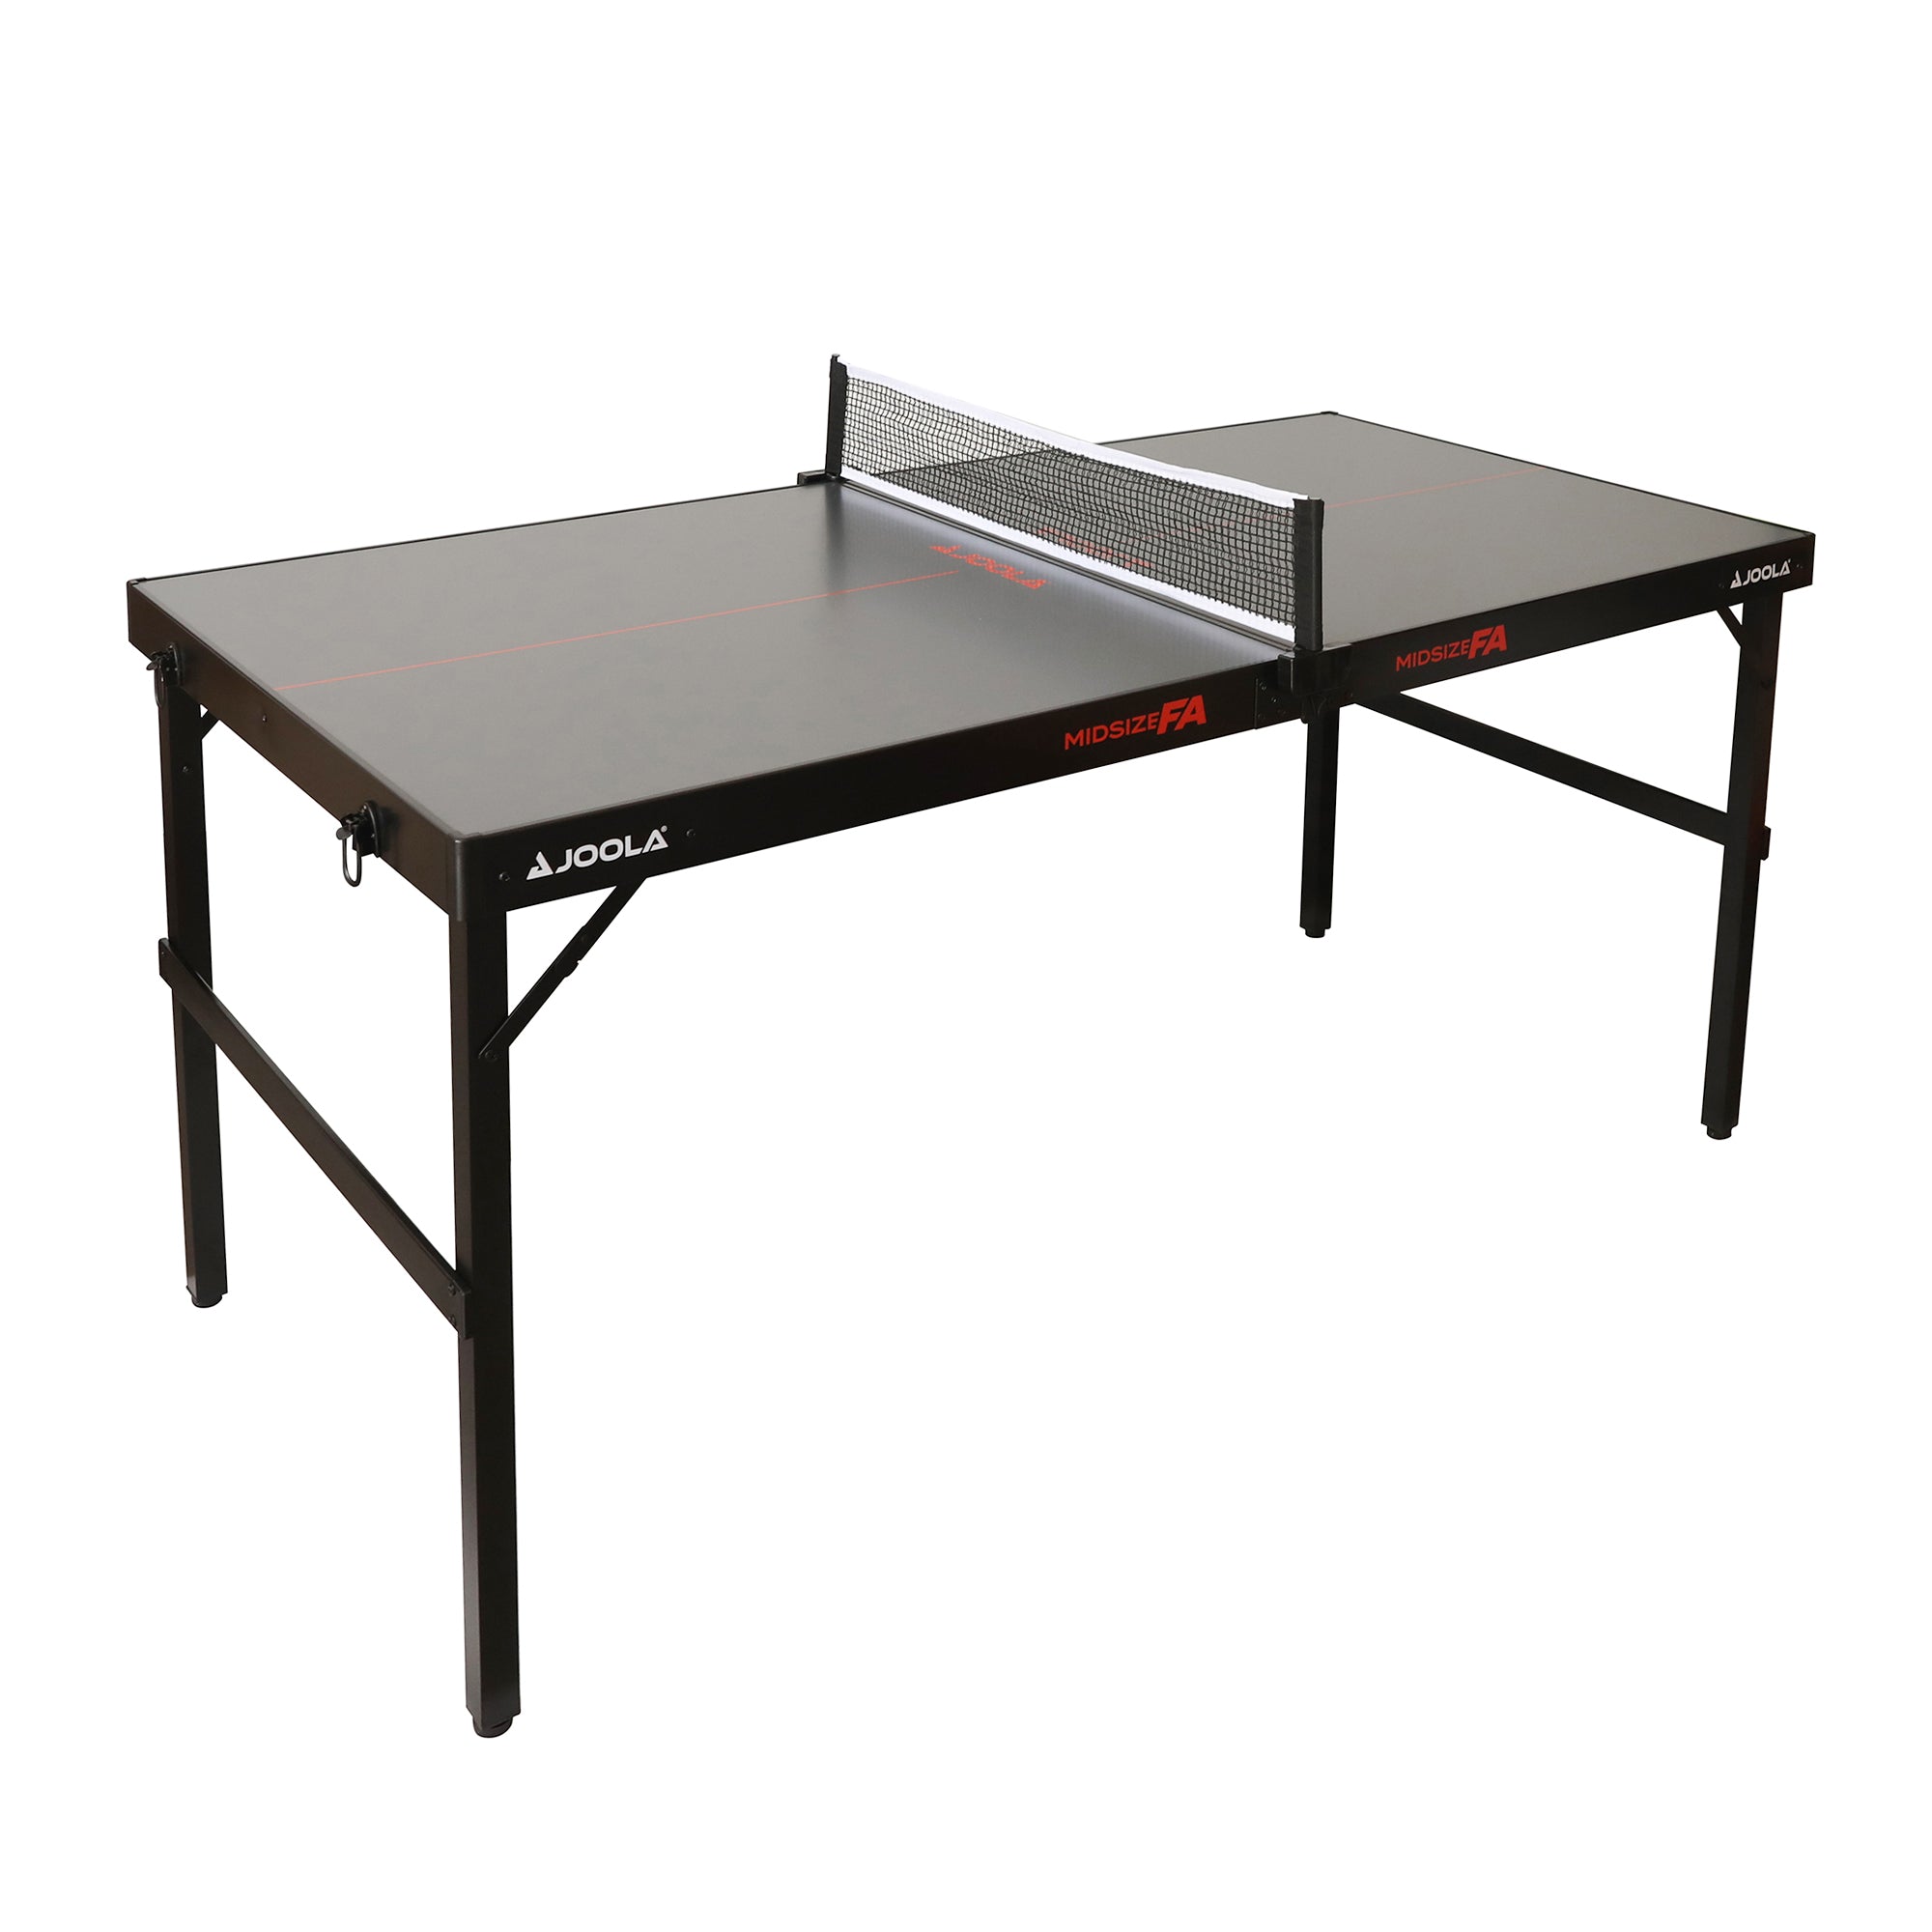 Table de ping-pong 273x153x76cm – Orca